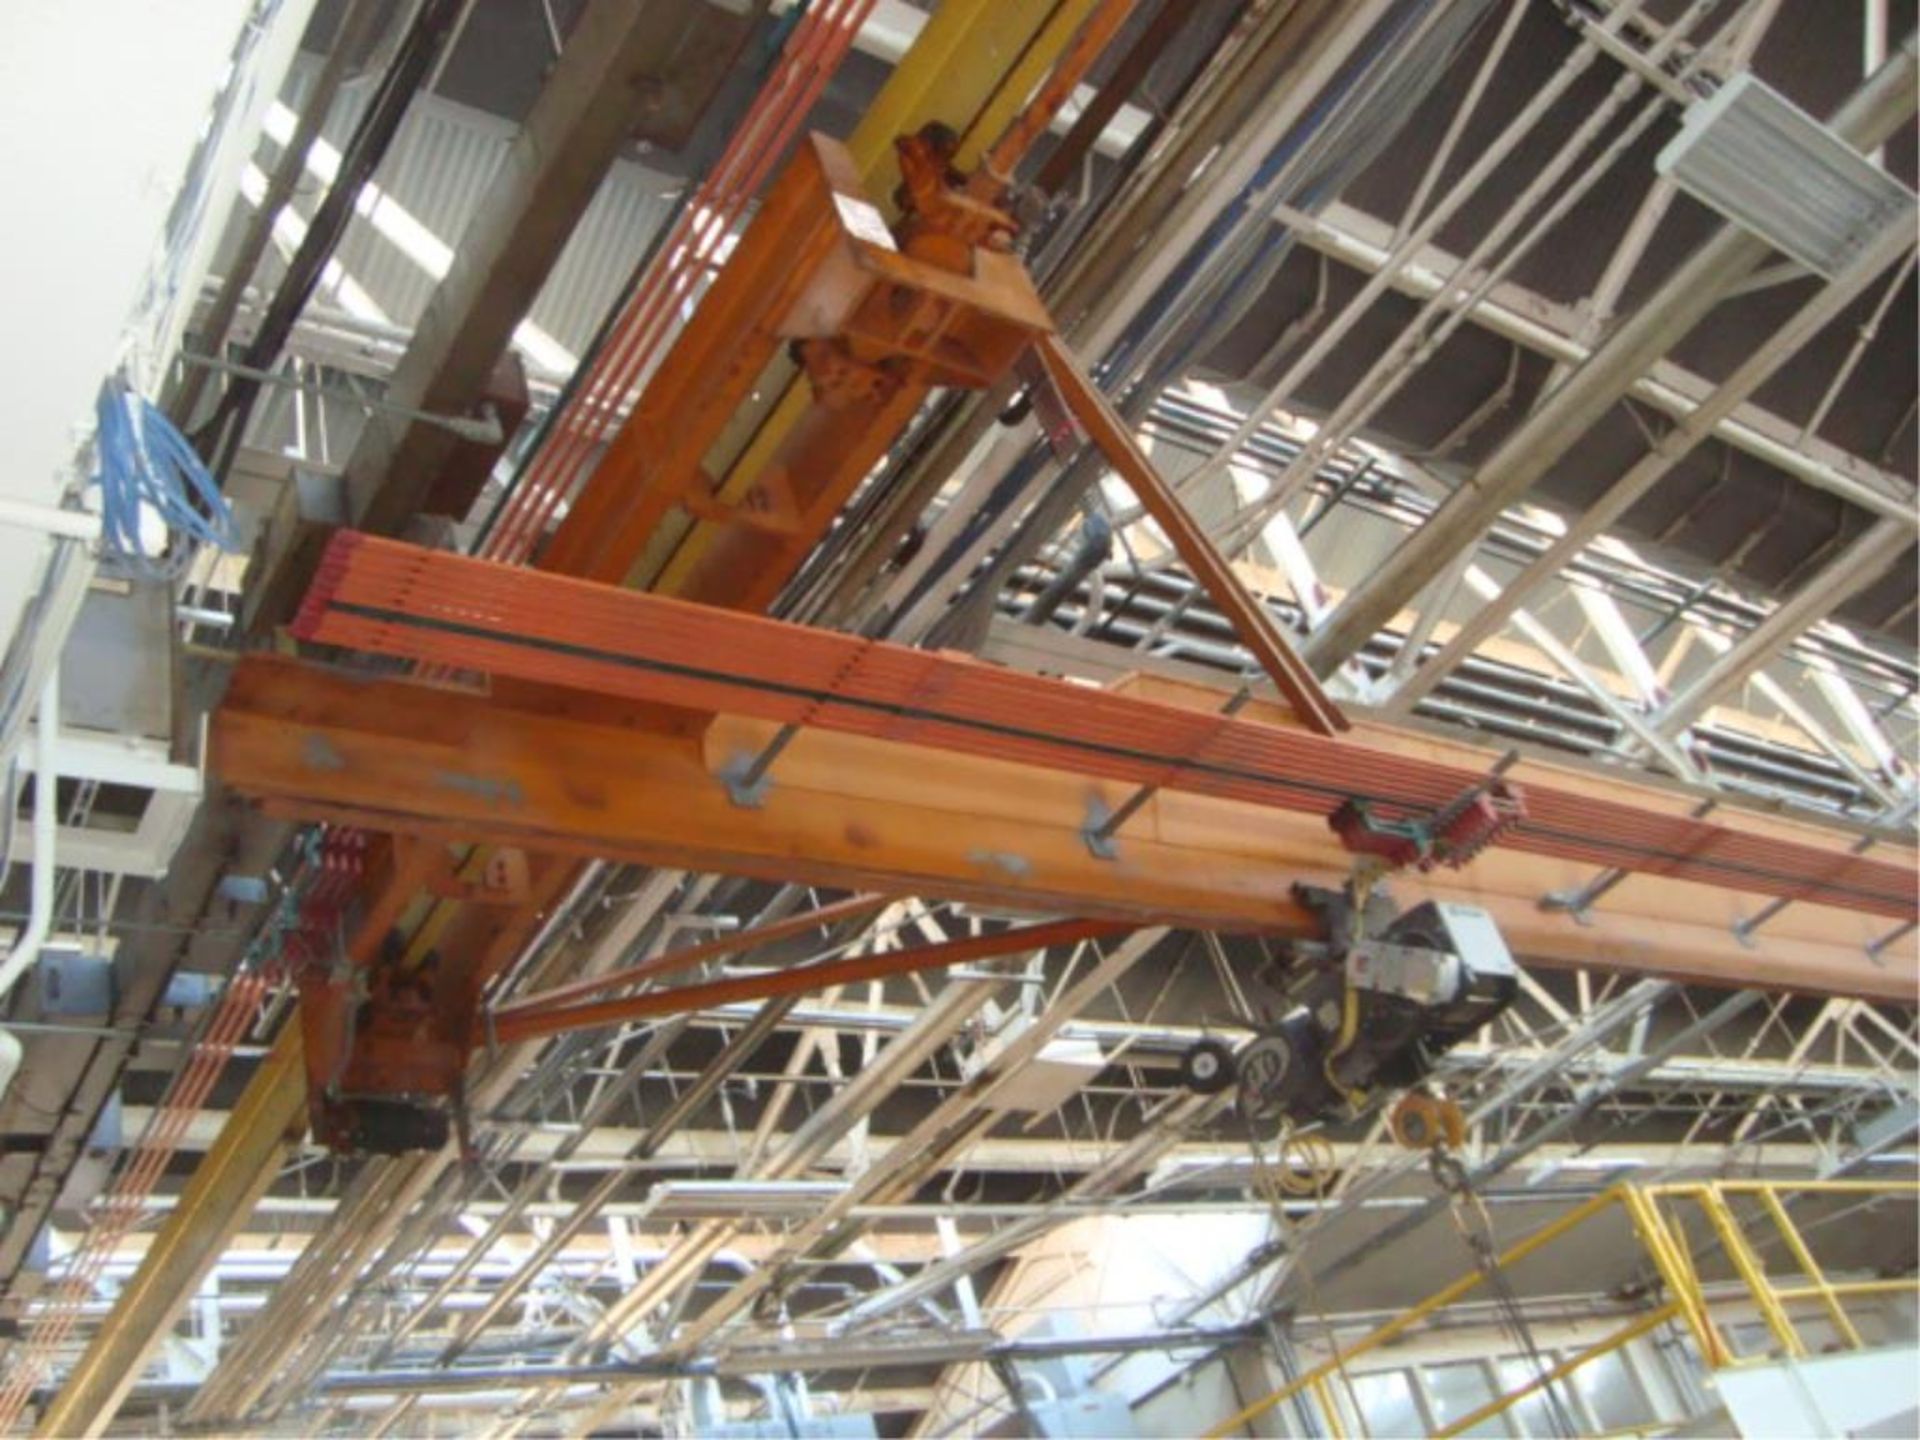 5-Ton Capacity Overhead Bridge Crane - Image 2 of 10